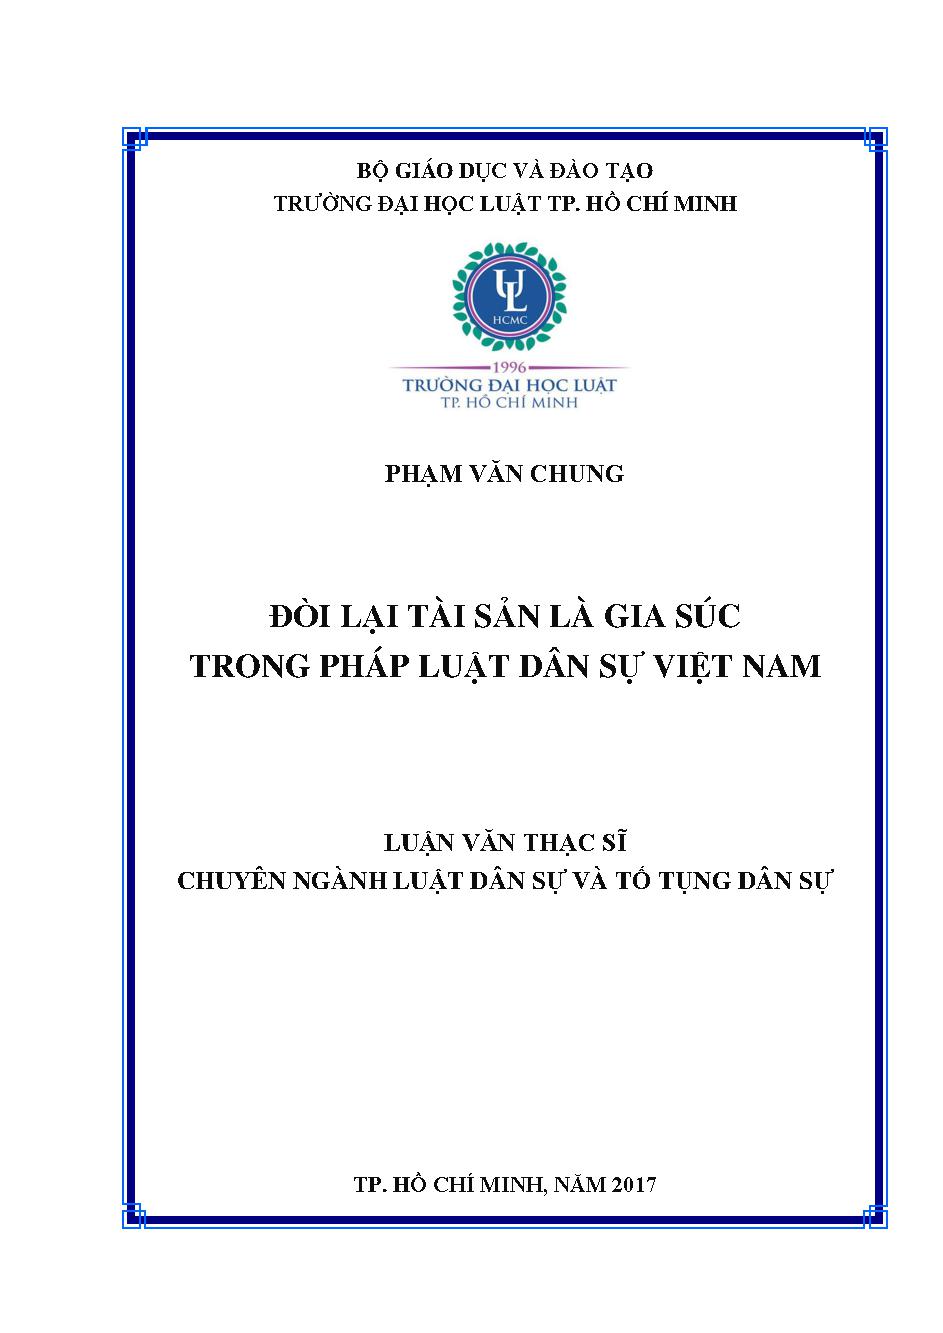 Đòi lại tài sản là gia súc trong pháp luật dân sự Việt Nam